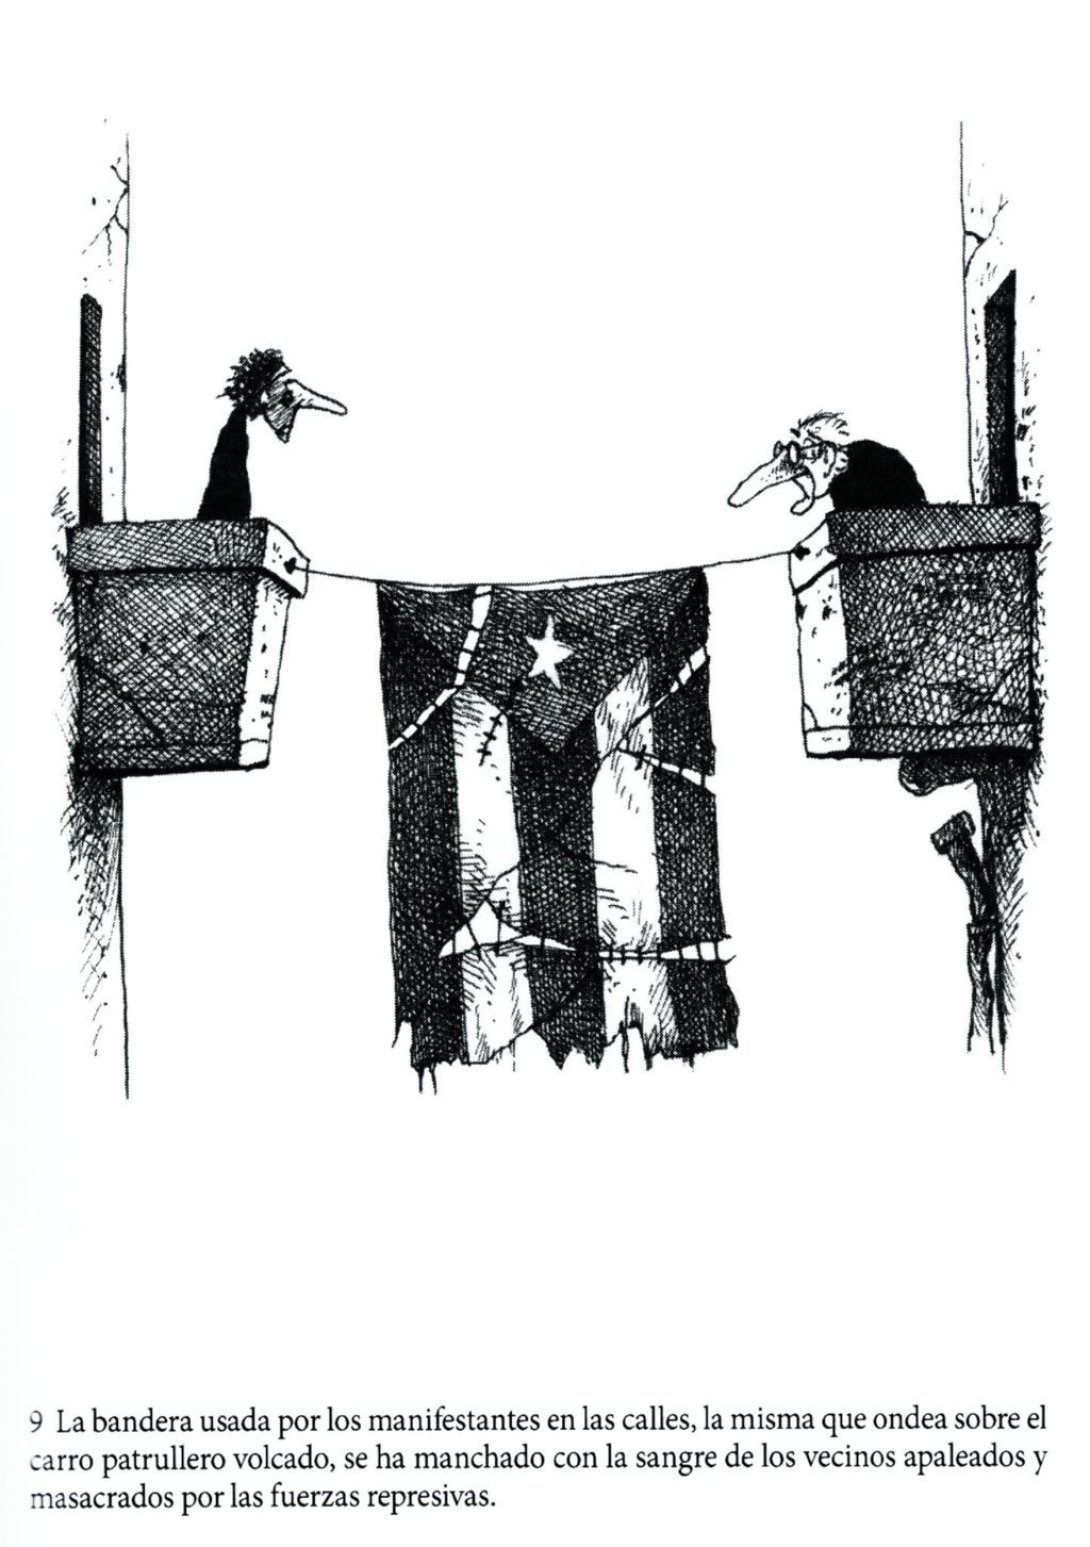 Página de libro "Concierto mambí". Dibujo de Omar Santana. "Mi bandera"